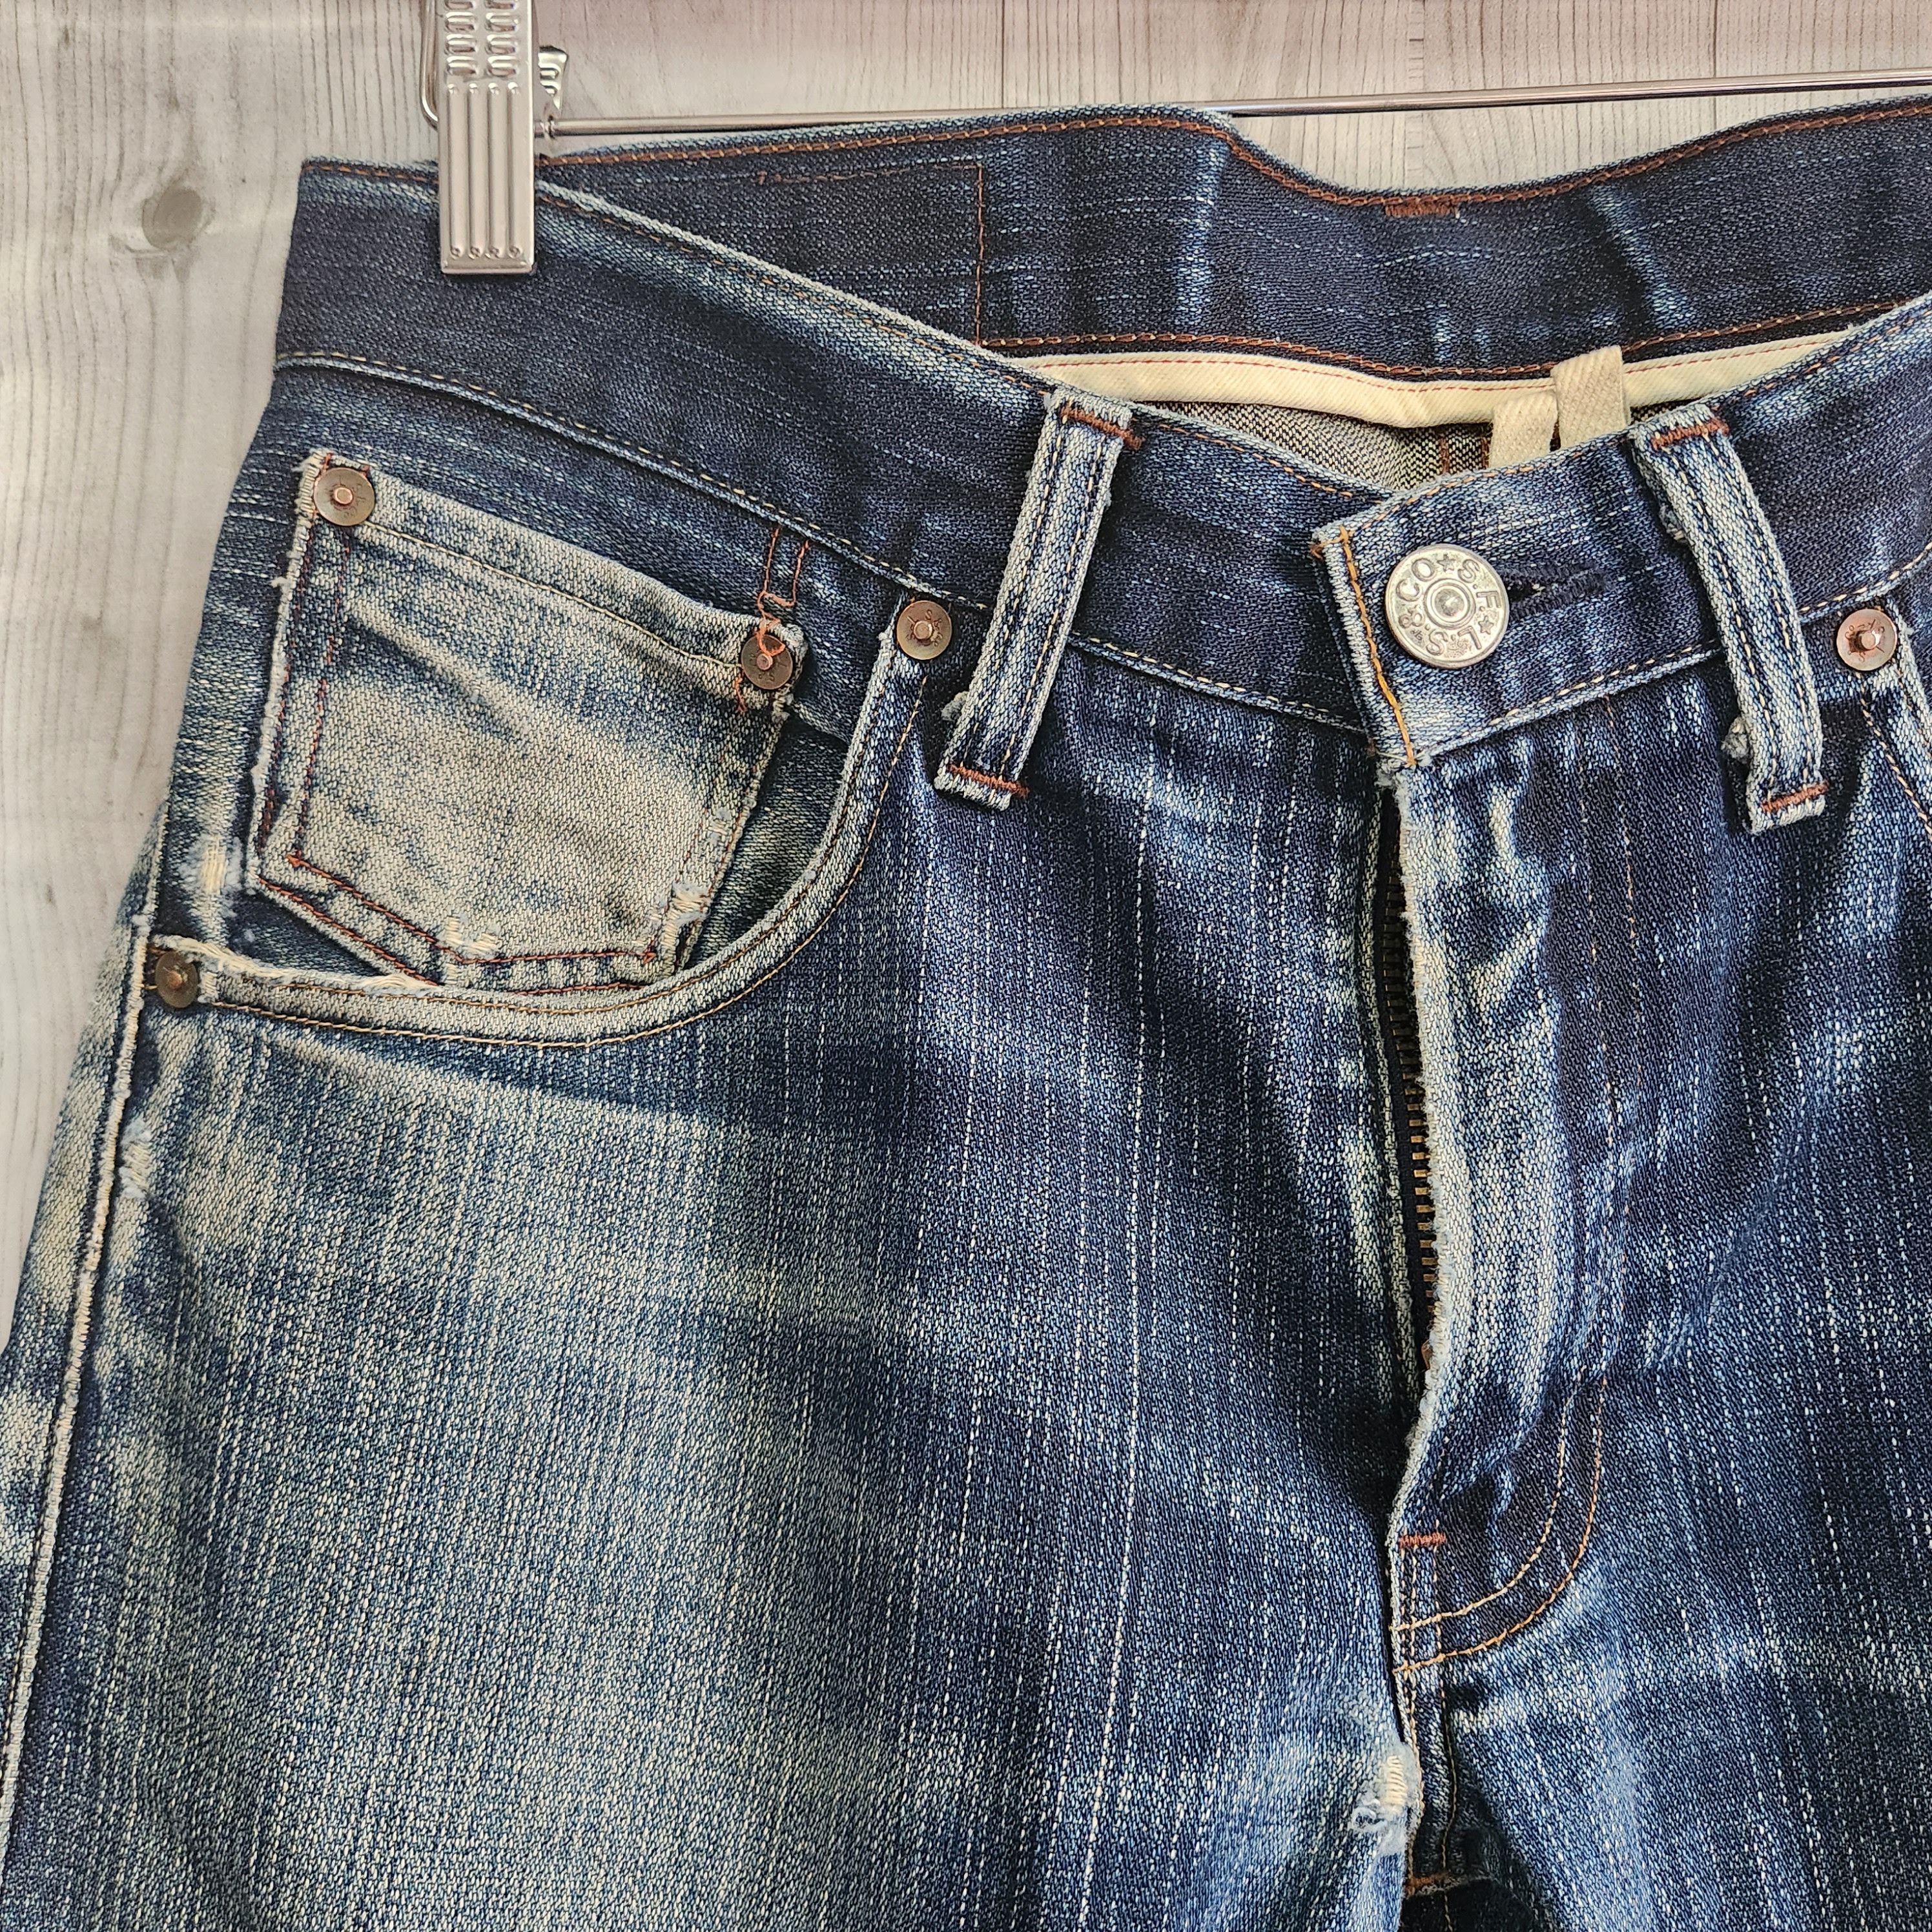 Levis 505 Premium Distressed Denim Jeans - 19